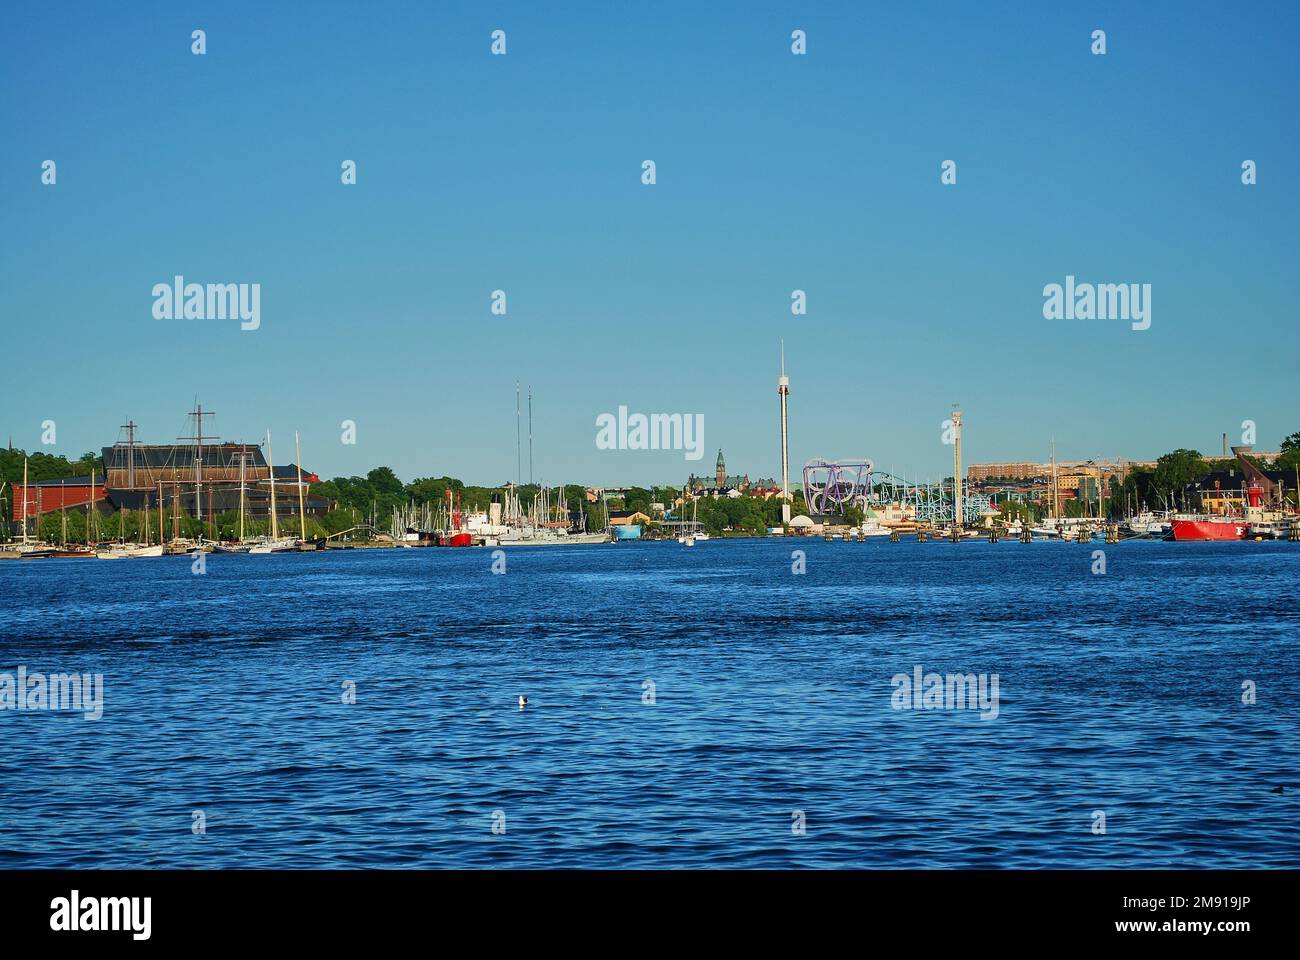 Paesaggio urbano della capitale svedese Stoccolma con le vie d'acqua del porto sulla costa del mar baltico Foto Stock